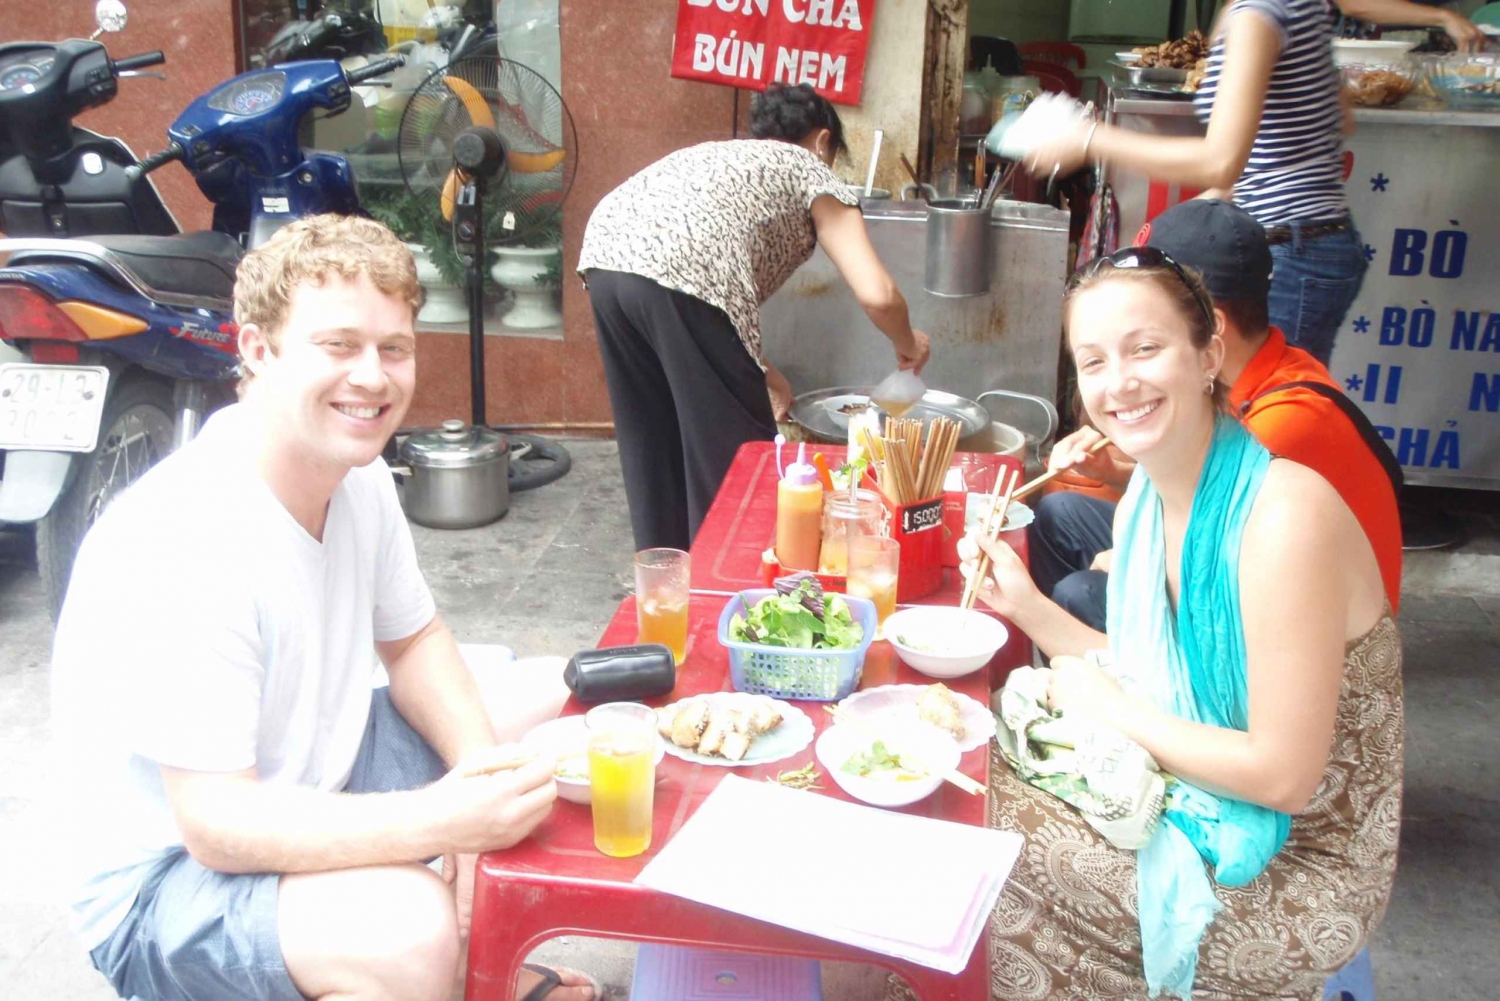 Hanoi Mat til fots: Vandring i Hanois gamle kvarter